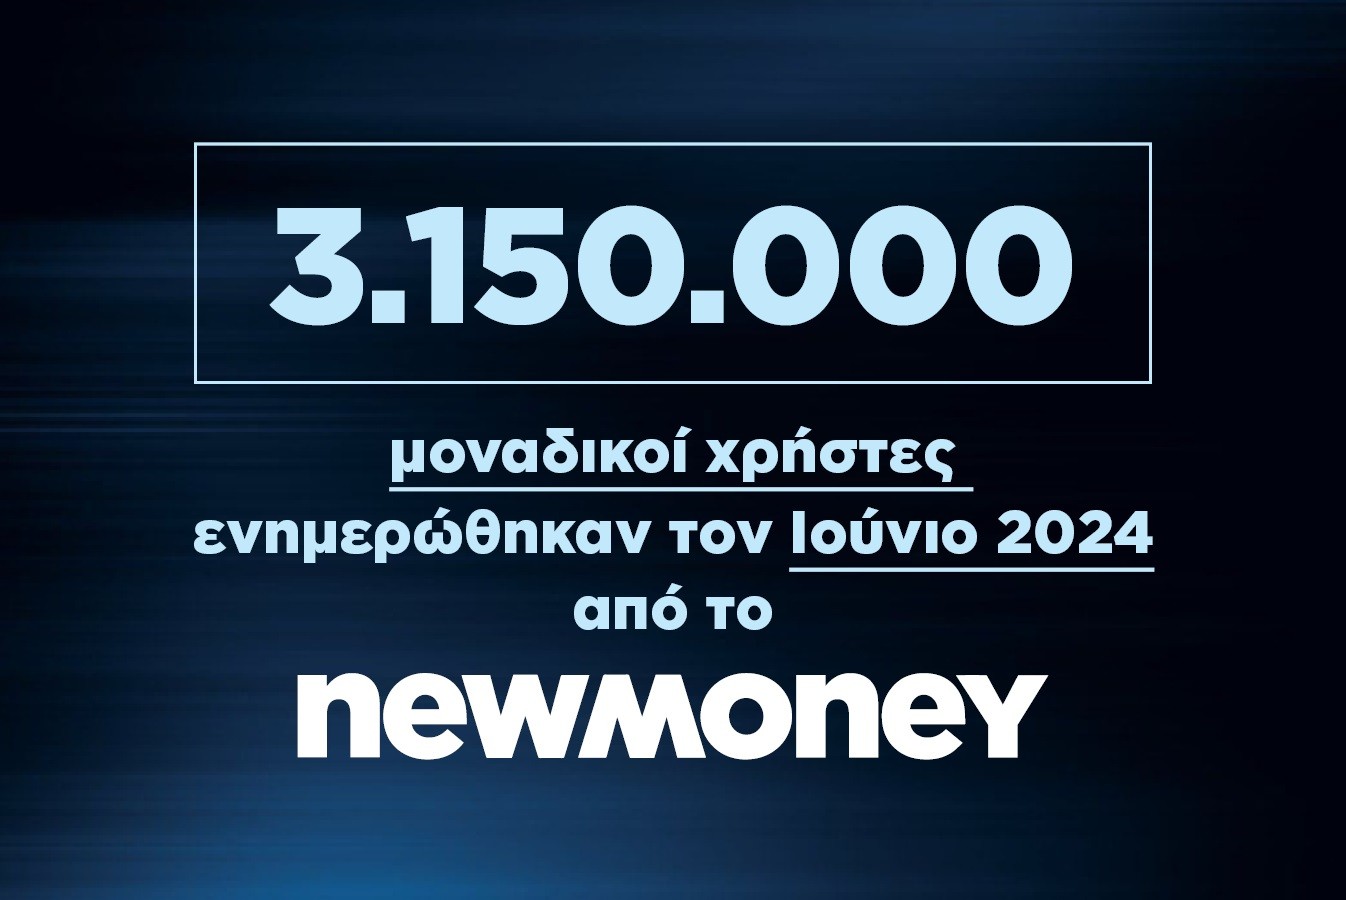 3.150.000 μοναδικοί χρήστες ενημερώθηκαν τον Ιούνιο 2024 από το newmoney.gr